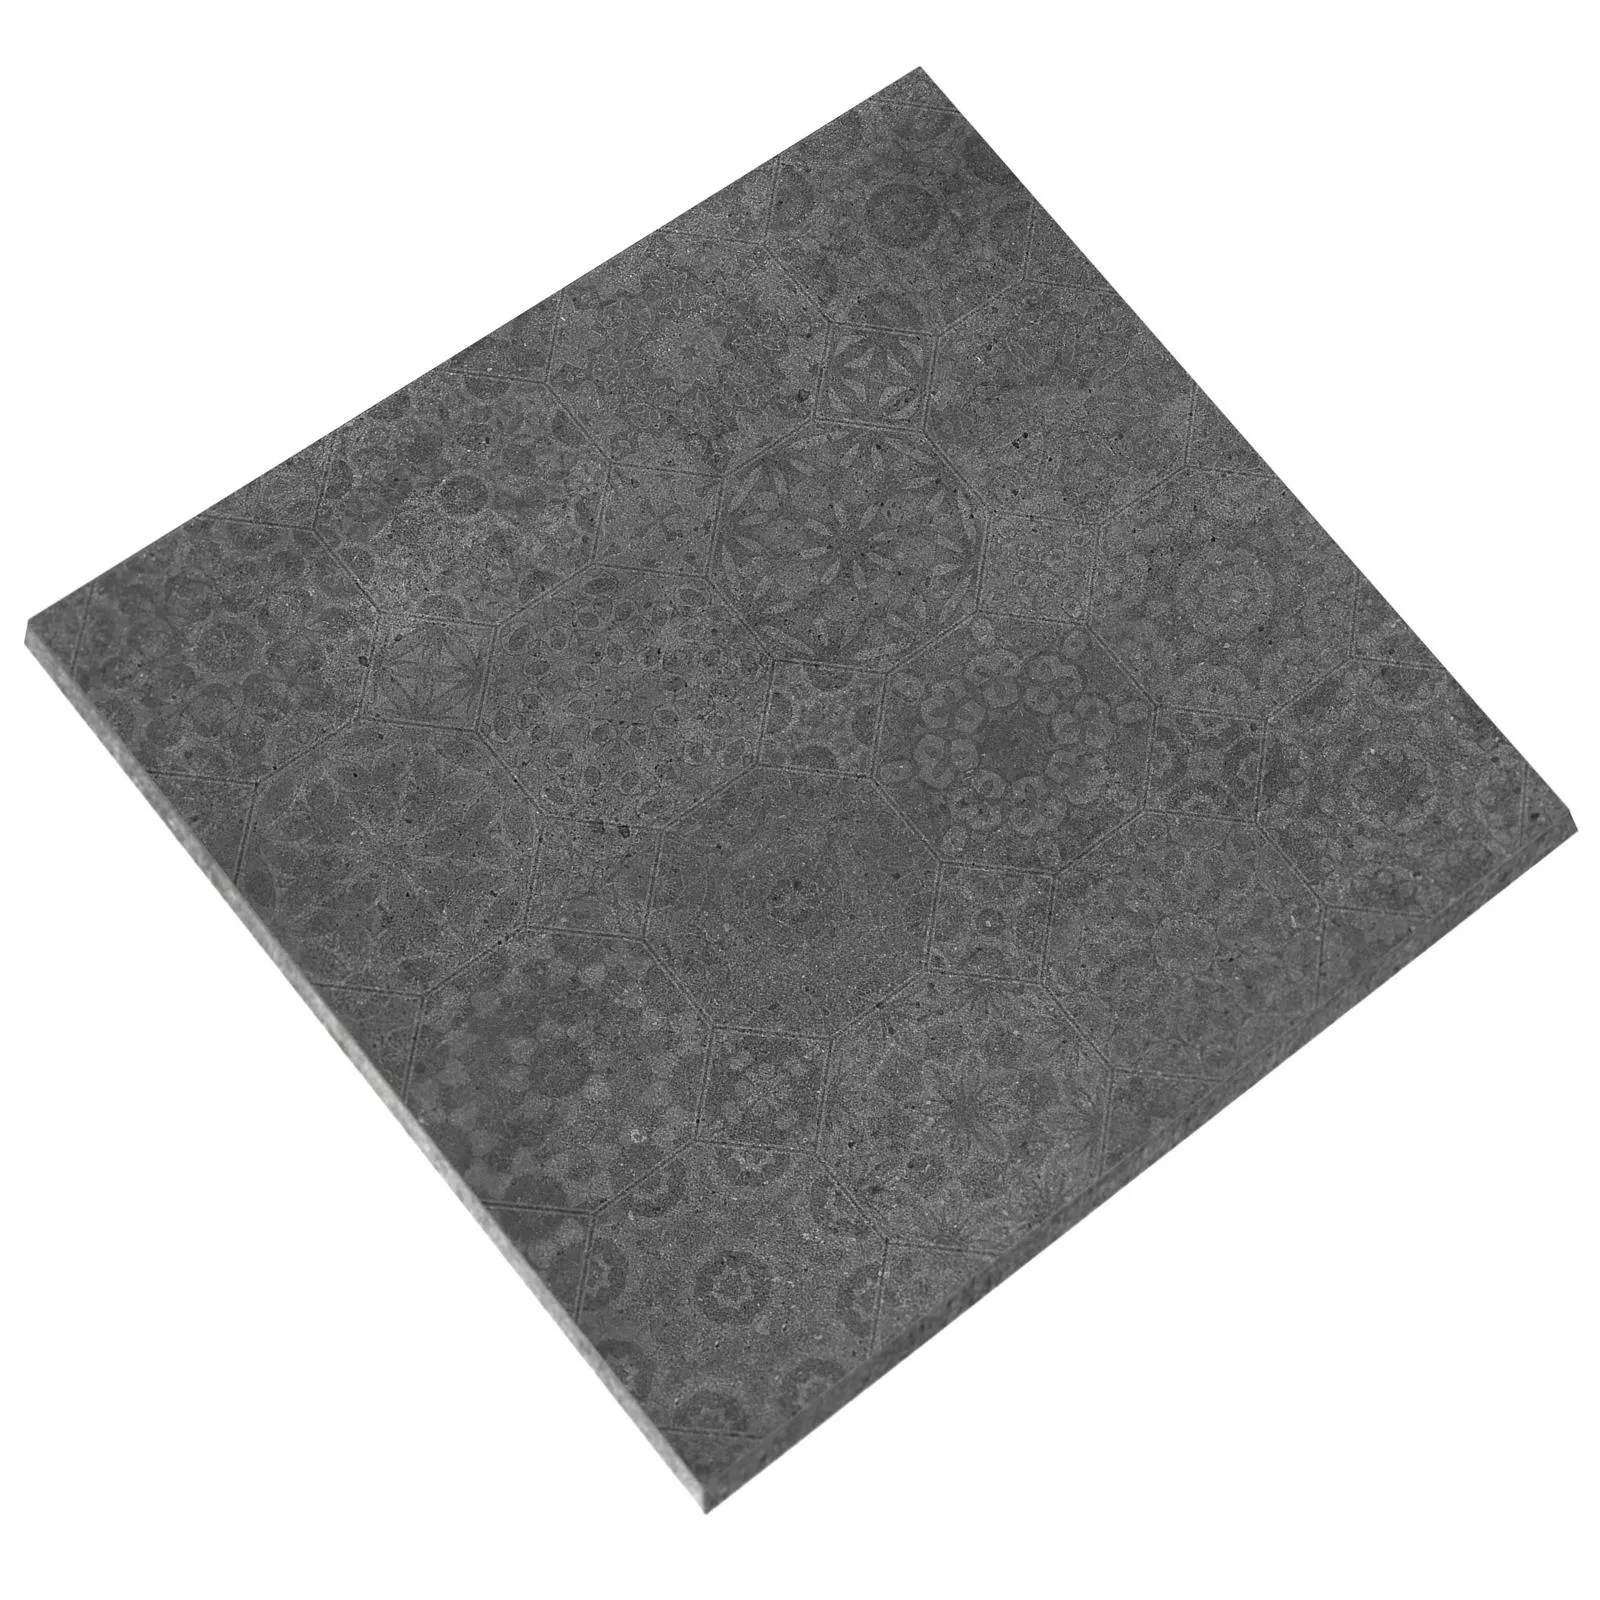 Πλακάκια Δαπέδου Freeland Πέτρινη Όψη R10/B Ανθρακίτης 60x60 Ντεκόρ